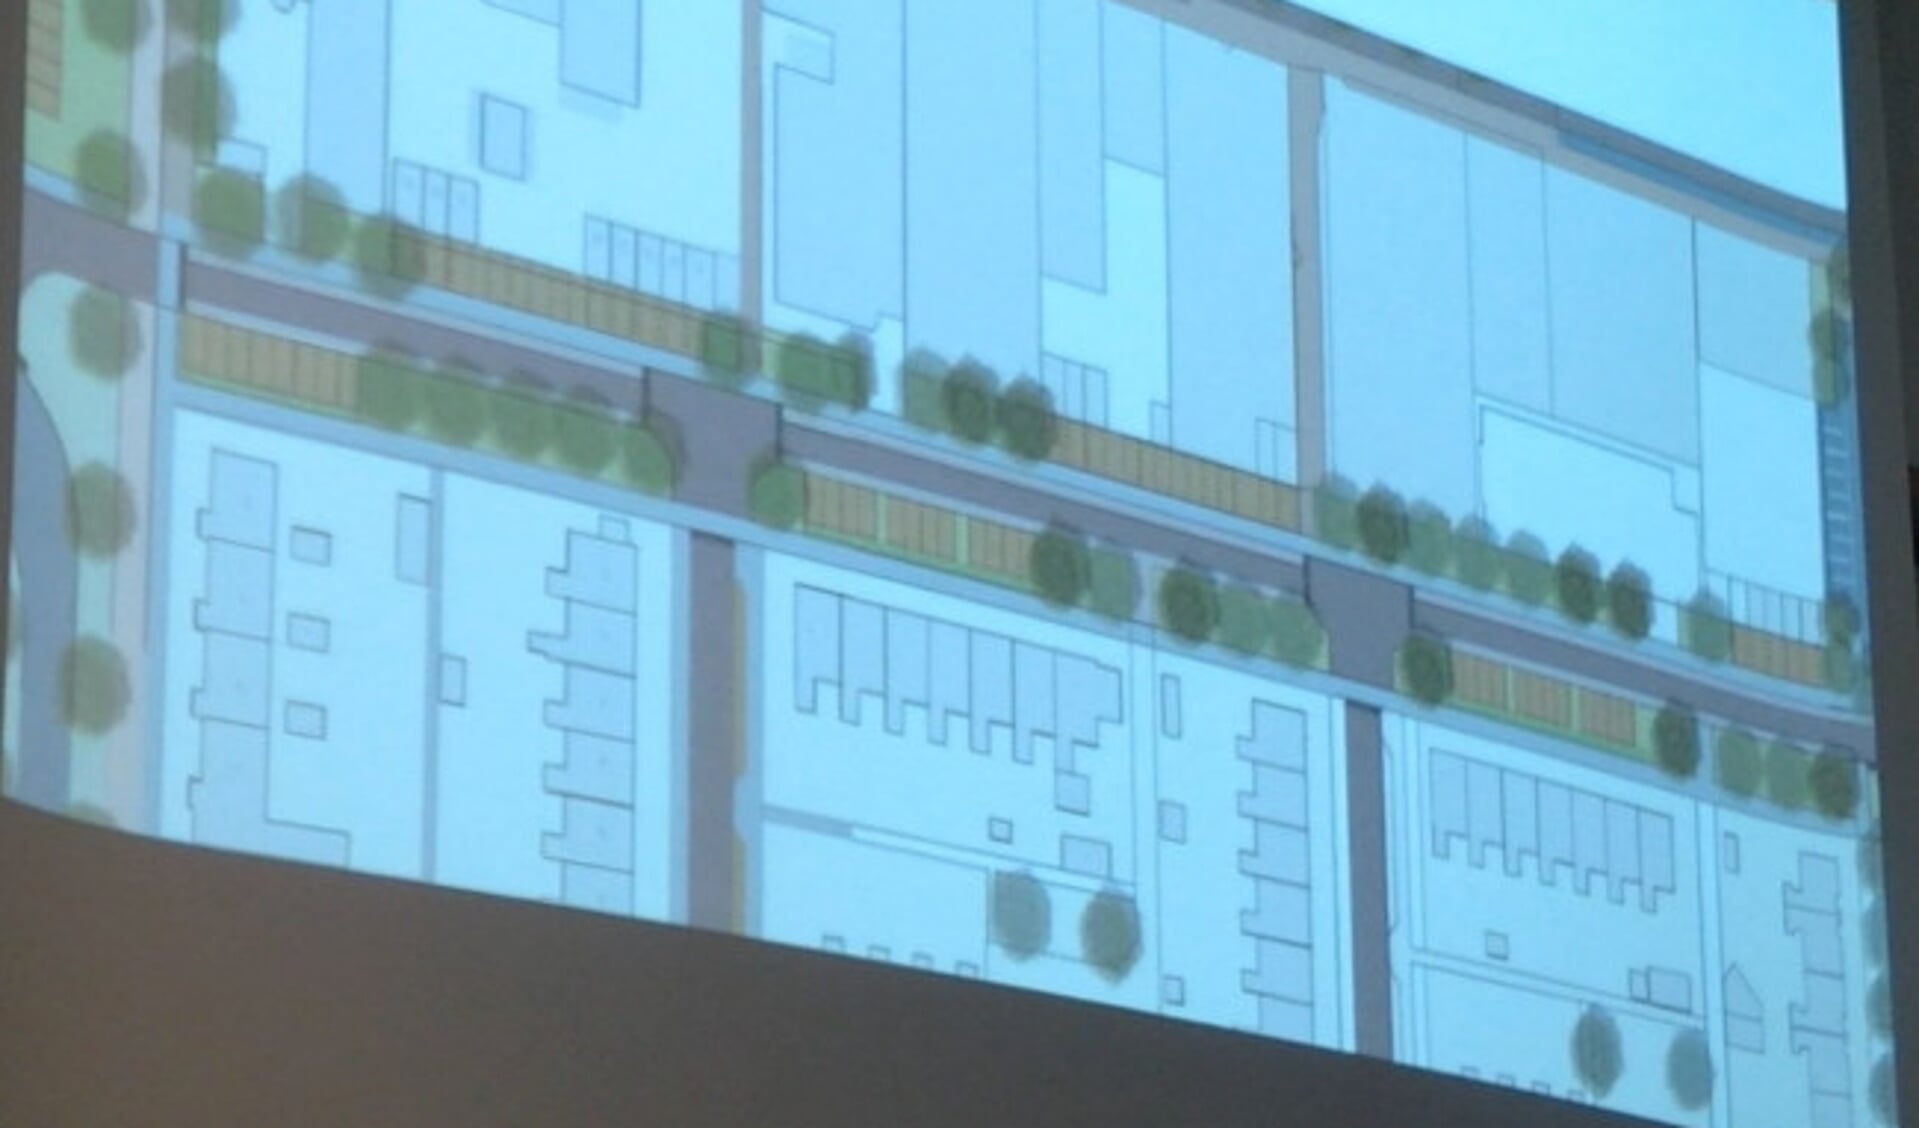  Het door de gemeente gepresenteerde plan voor de Walvisstraat.